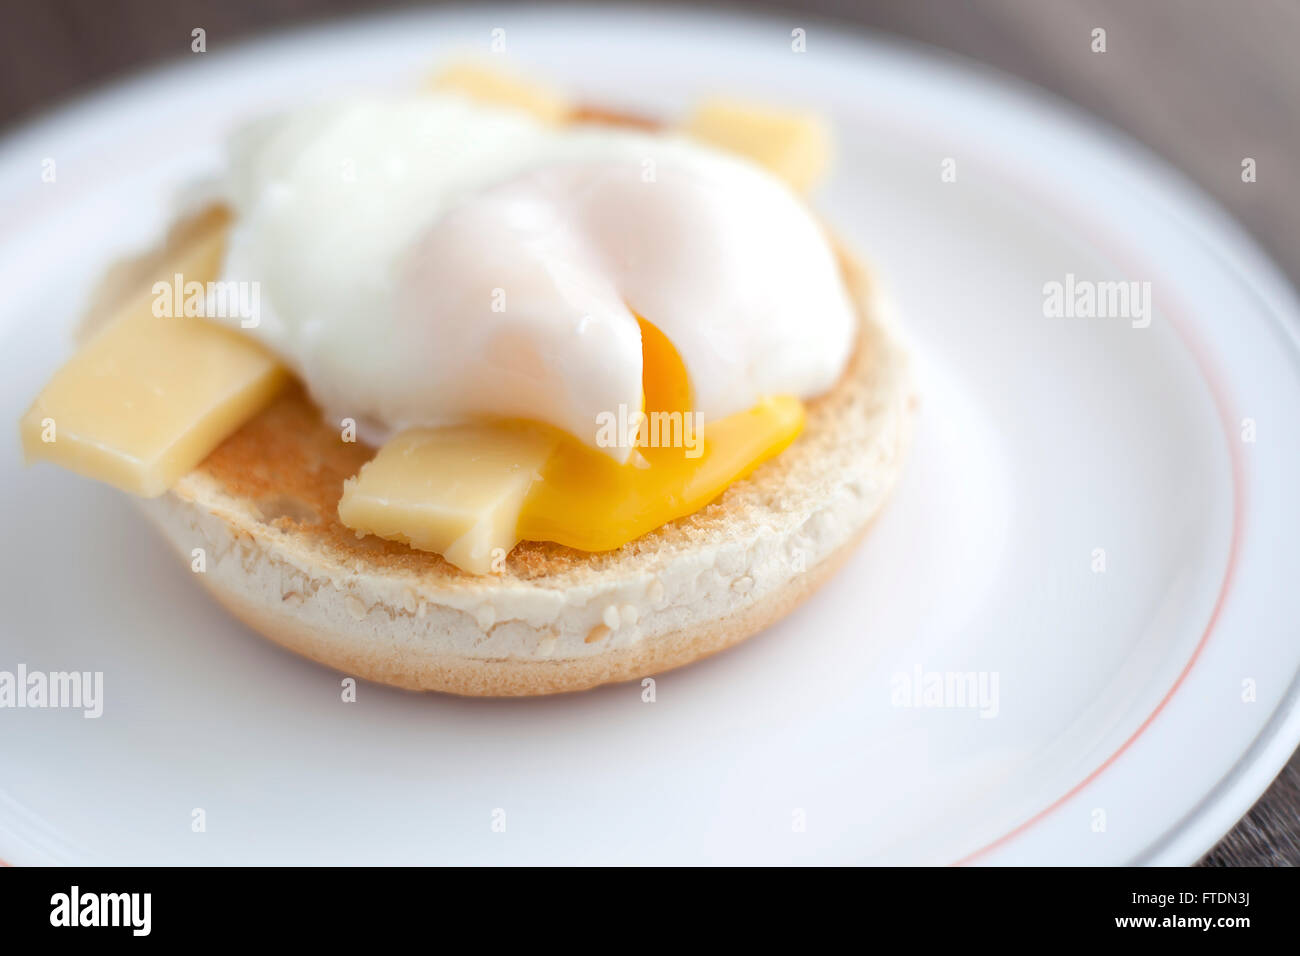 Como cocer huevos? - Huevos y quesos - Blog de MªGUADALUP CHINCOA